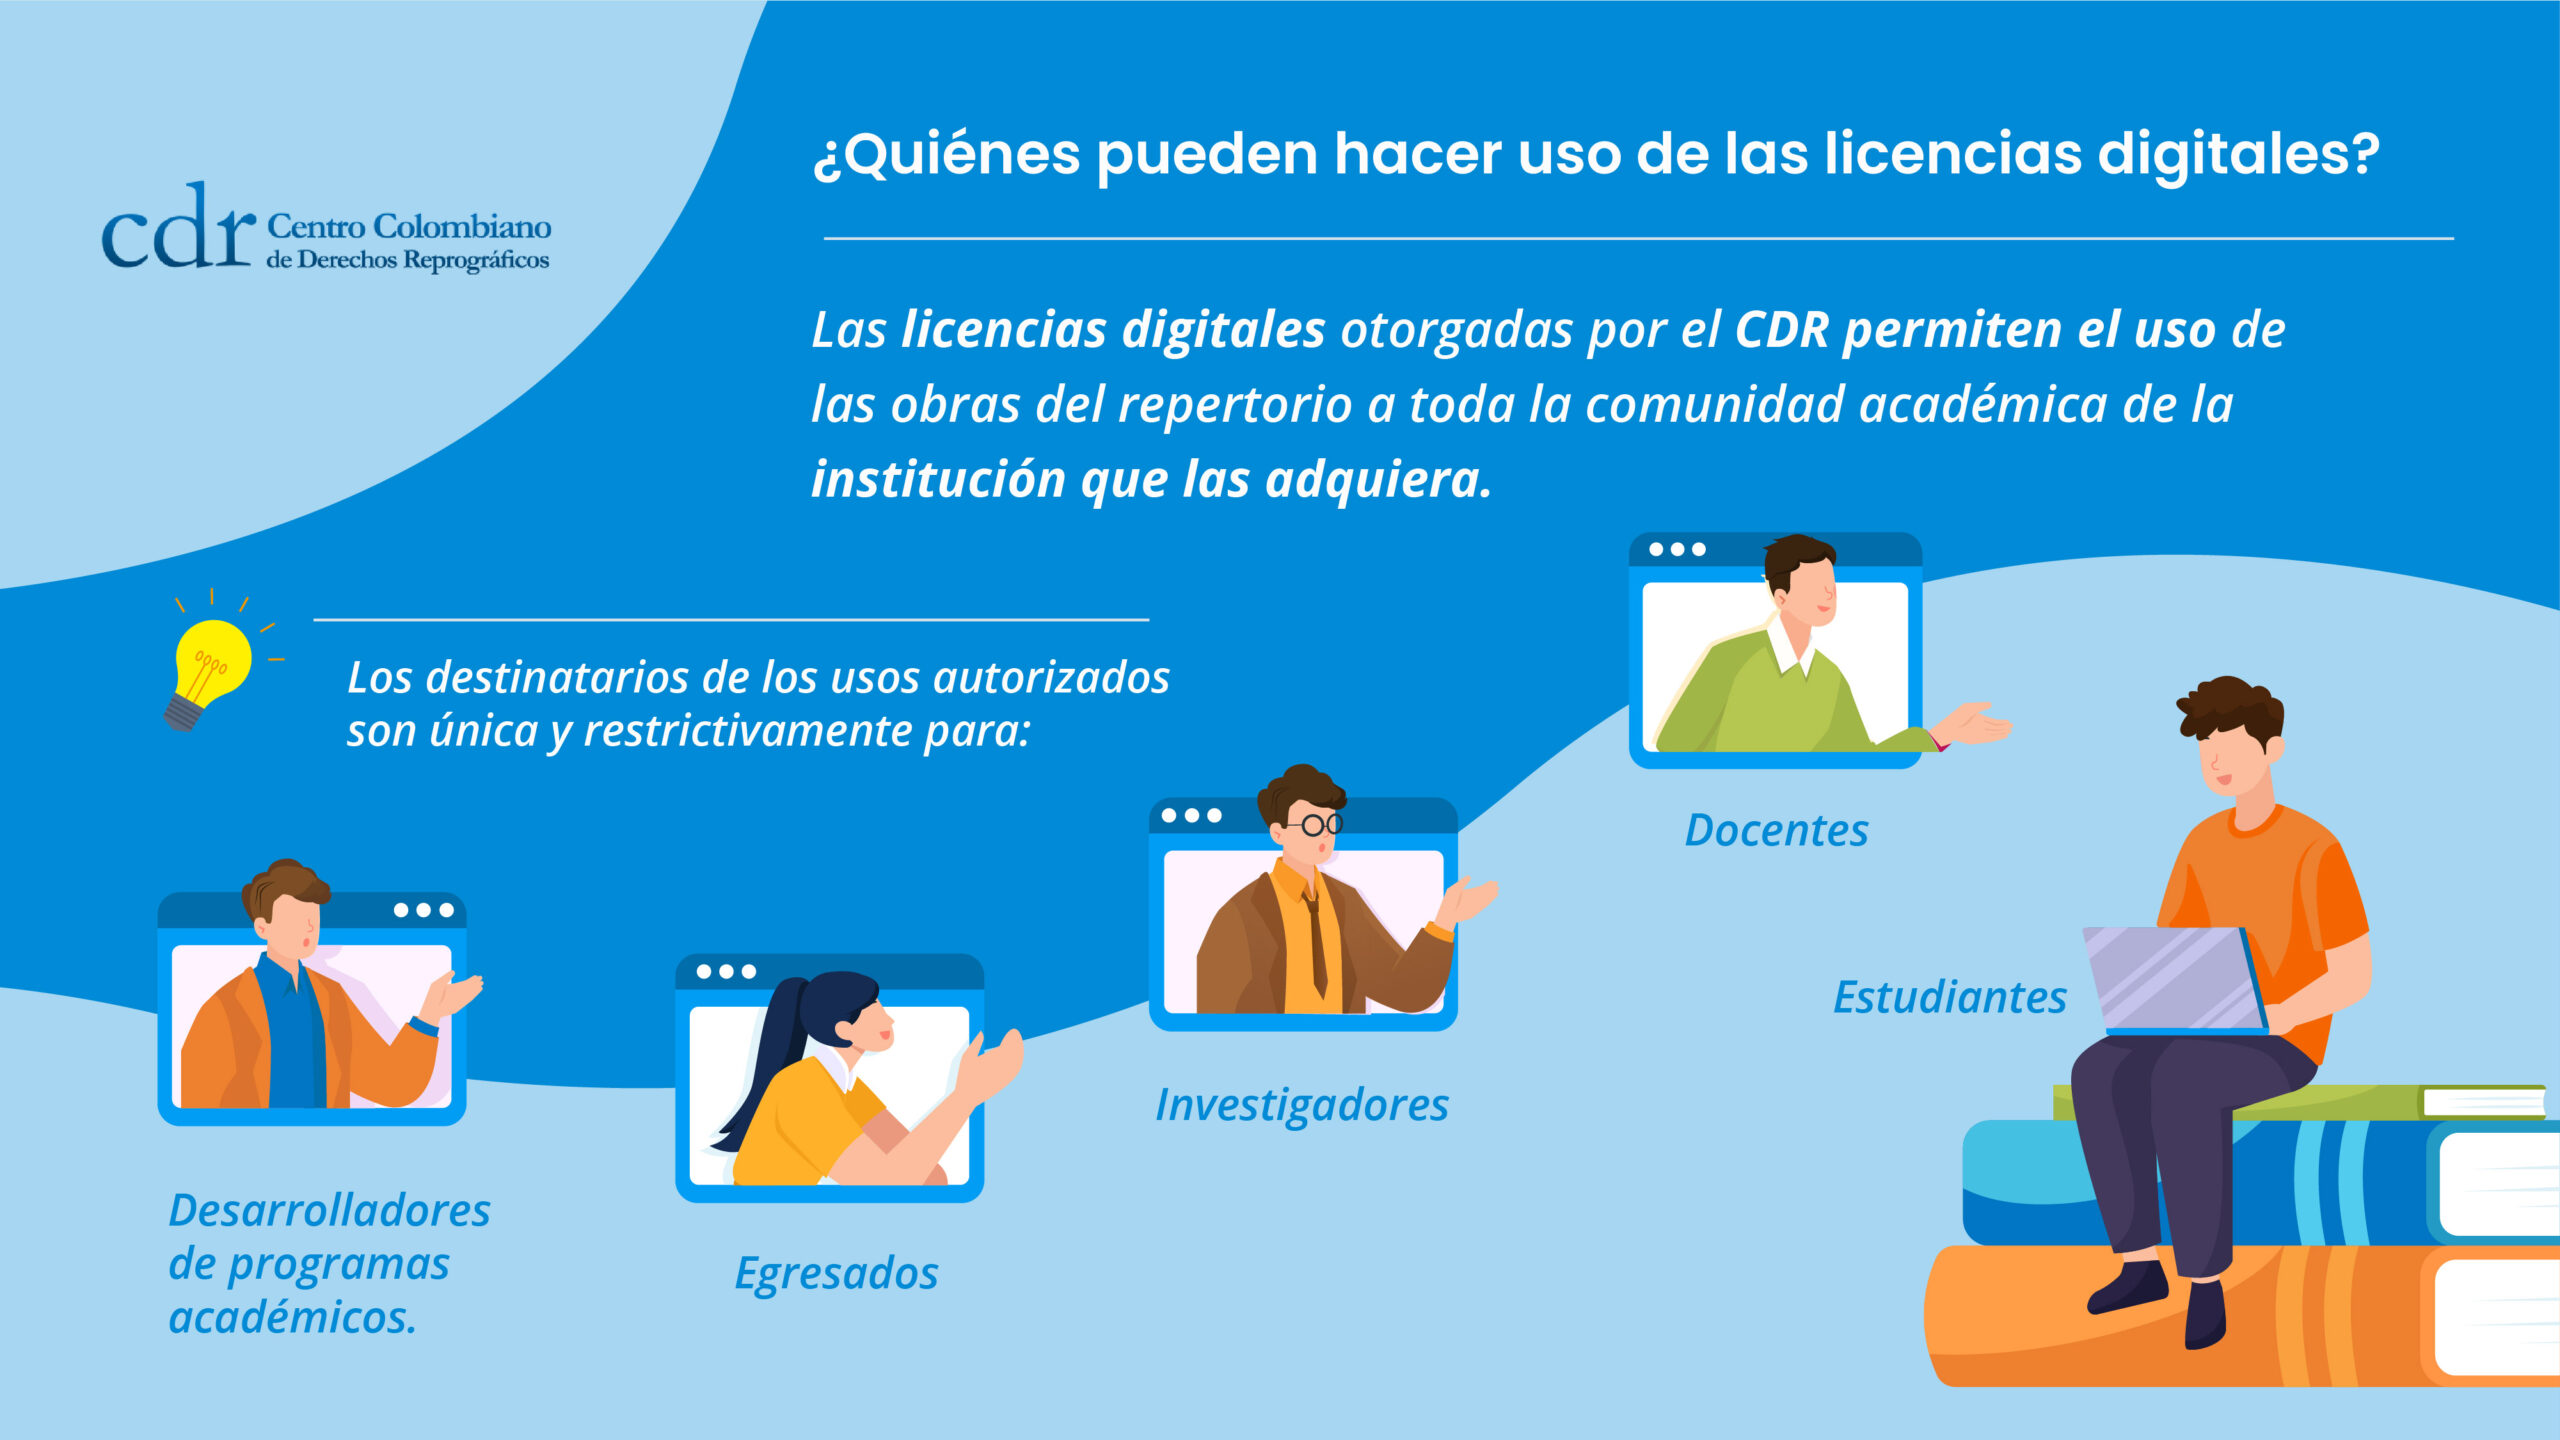 ¿Quiénes pueden hacer uso de las licencias digitales emitidas por el CDR?